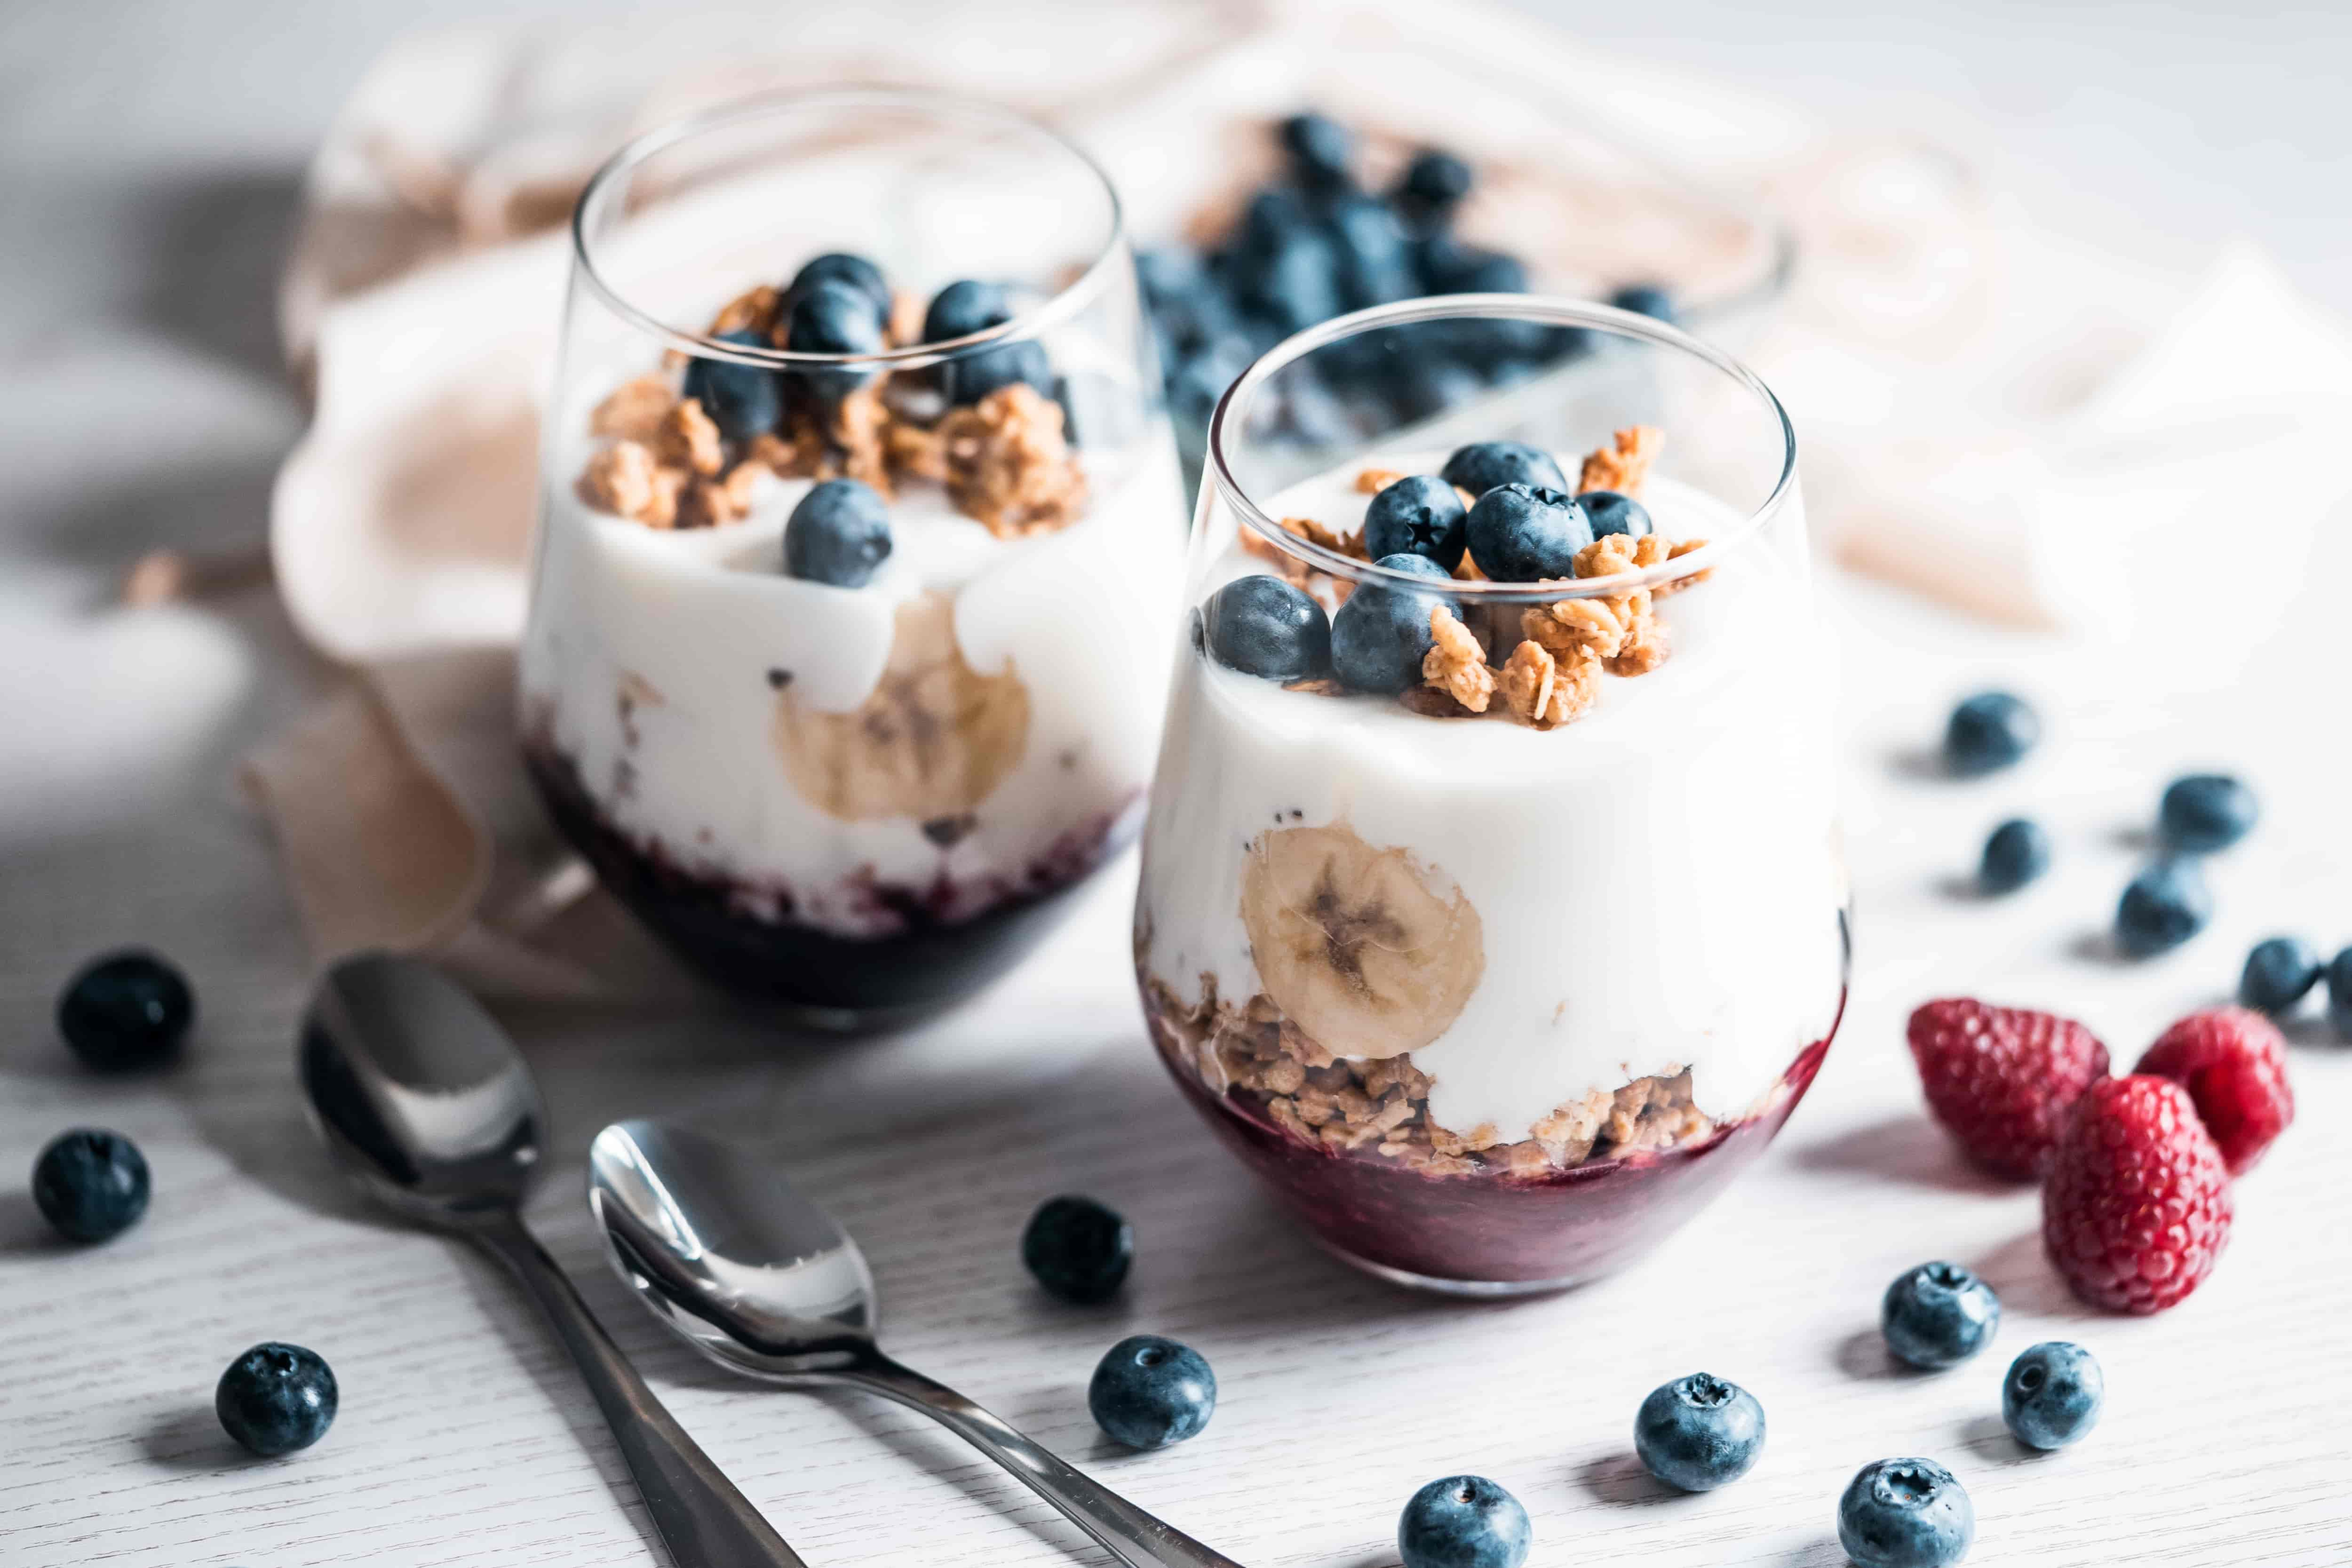 musli-yogurt-with-blueberries-picjumbo-com-min.jpg